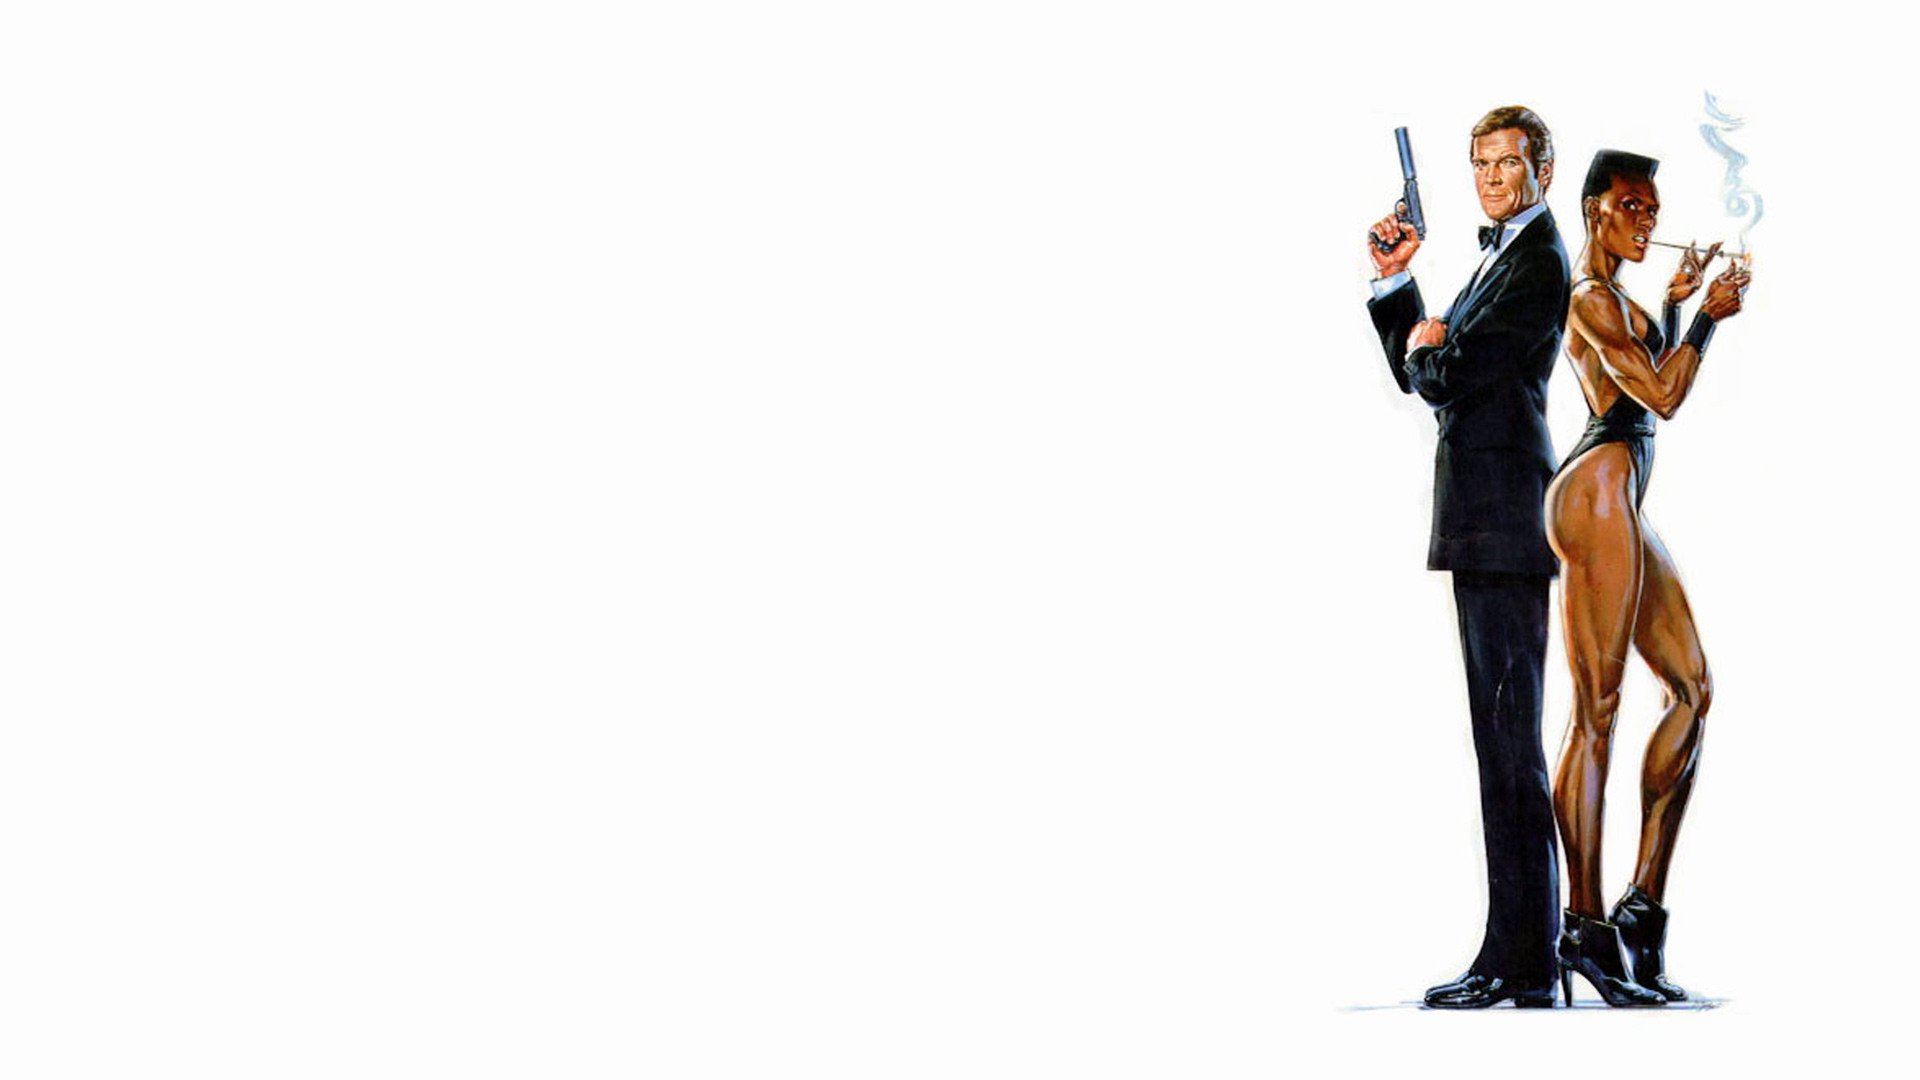 Фигура Джеймса Бонда - твердая основа для успешных исполнений самых сложных трюков.